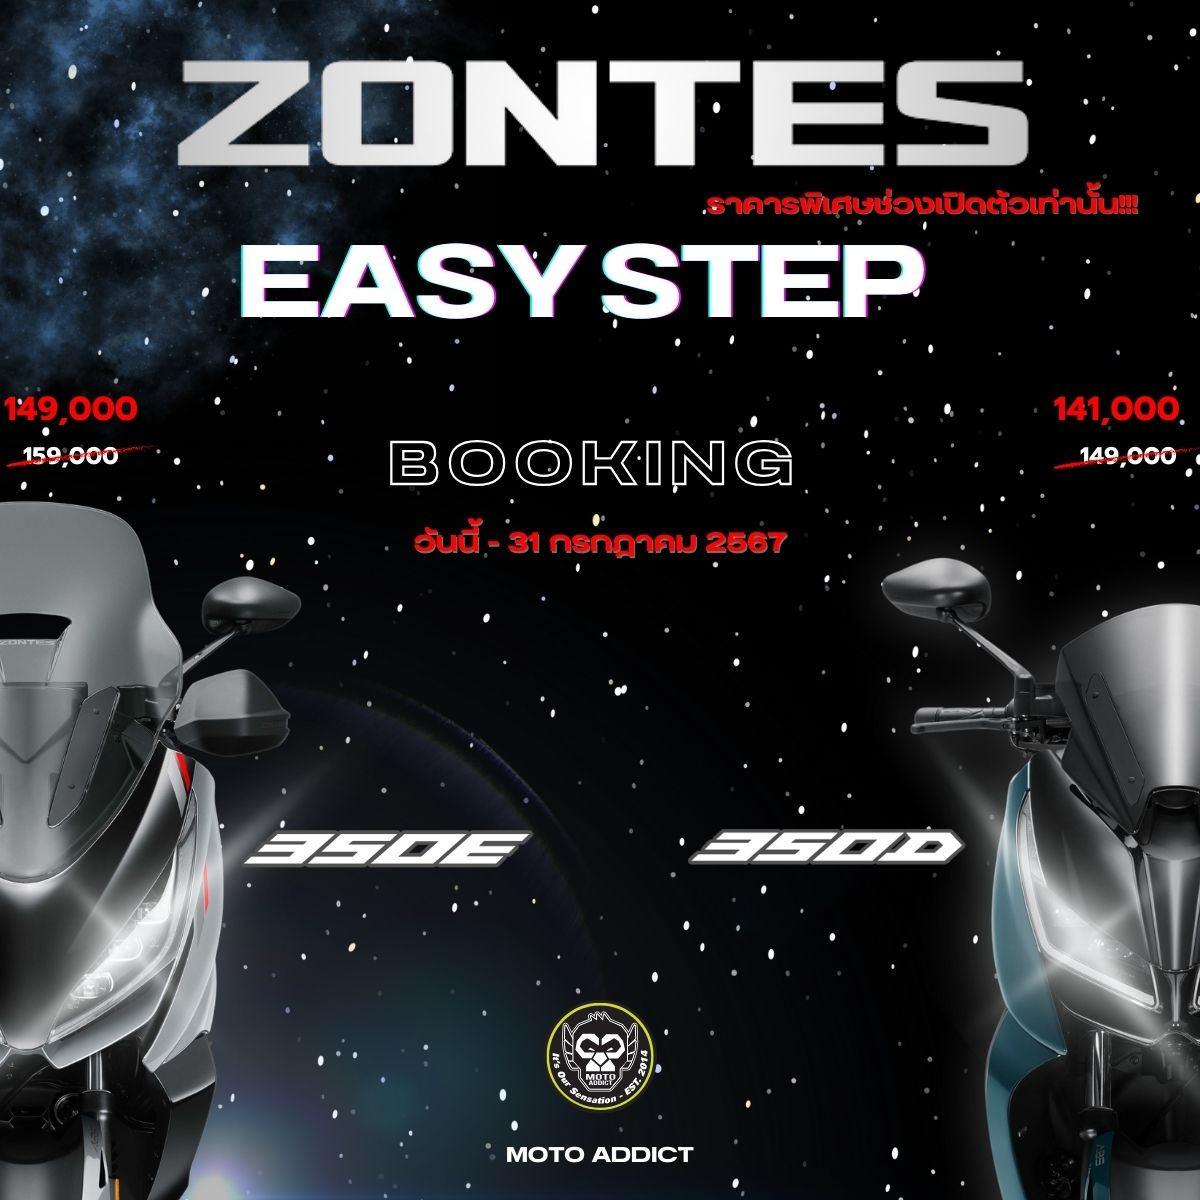 Easy Step 6 ขั้นตอนง่ายๆ สู่การเป็นเจ้าของมอเตอร์ไซค์ ZONTES